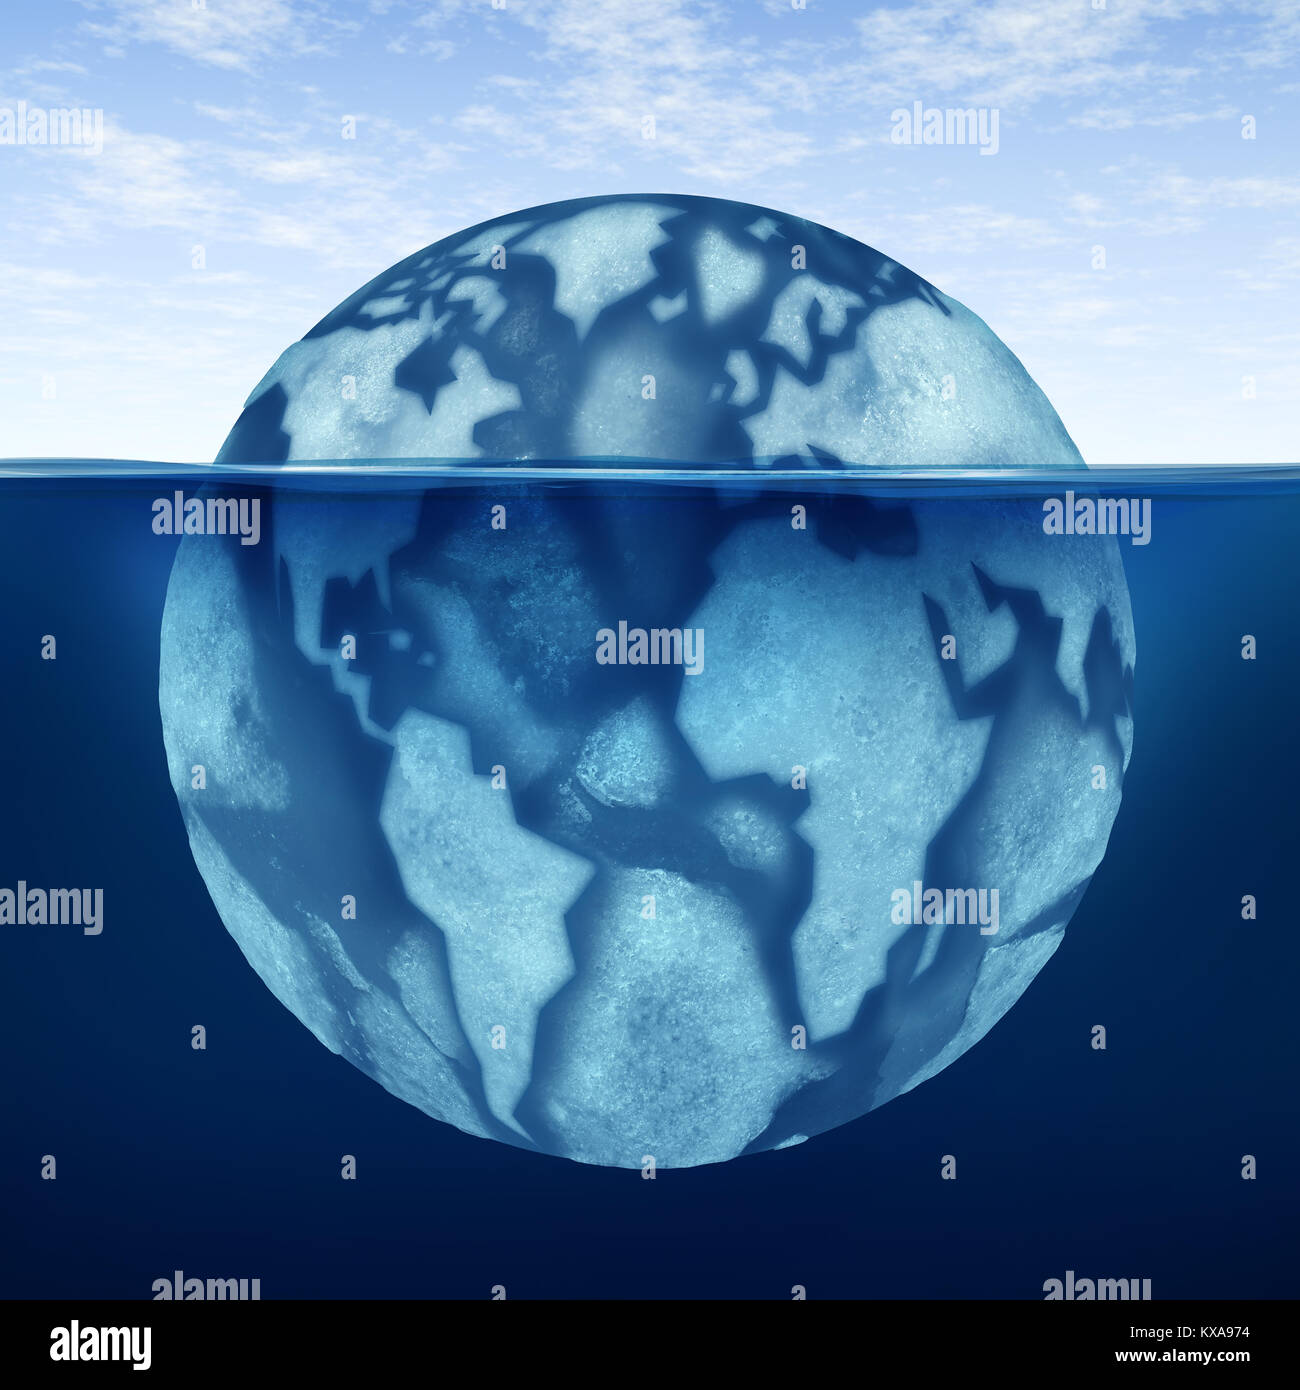 Clima frío mundo y extremas de invierno la congelación en todo el mundo como hueso de hielo glacial del planeta Tierra como un iceberg con ilustración 3D elementos. Foto de stock